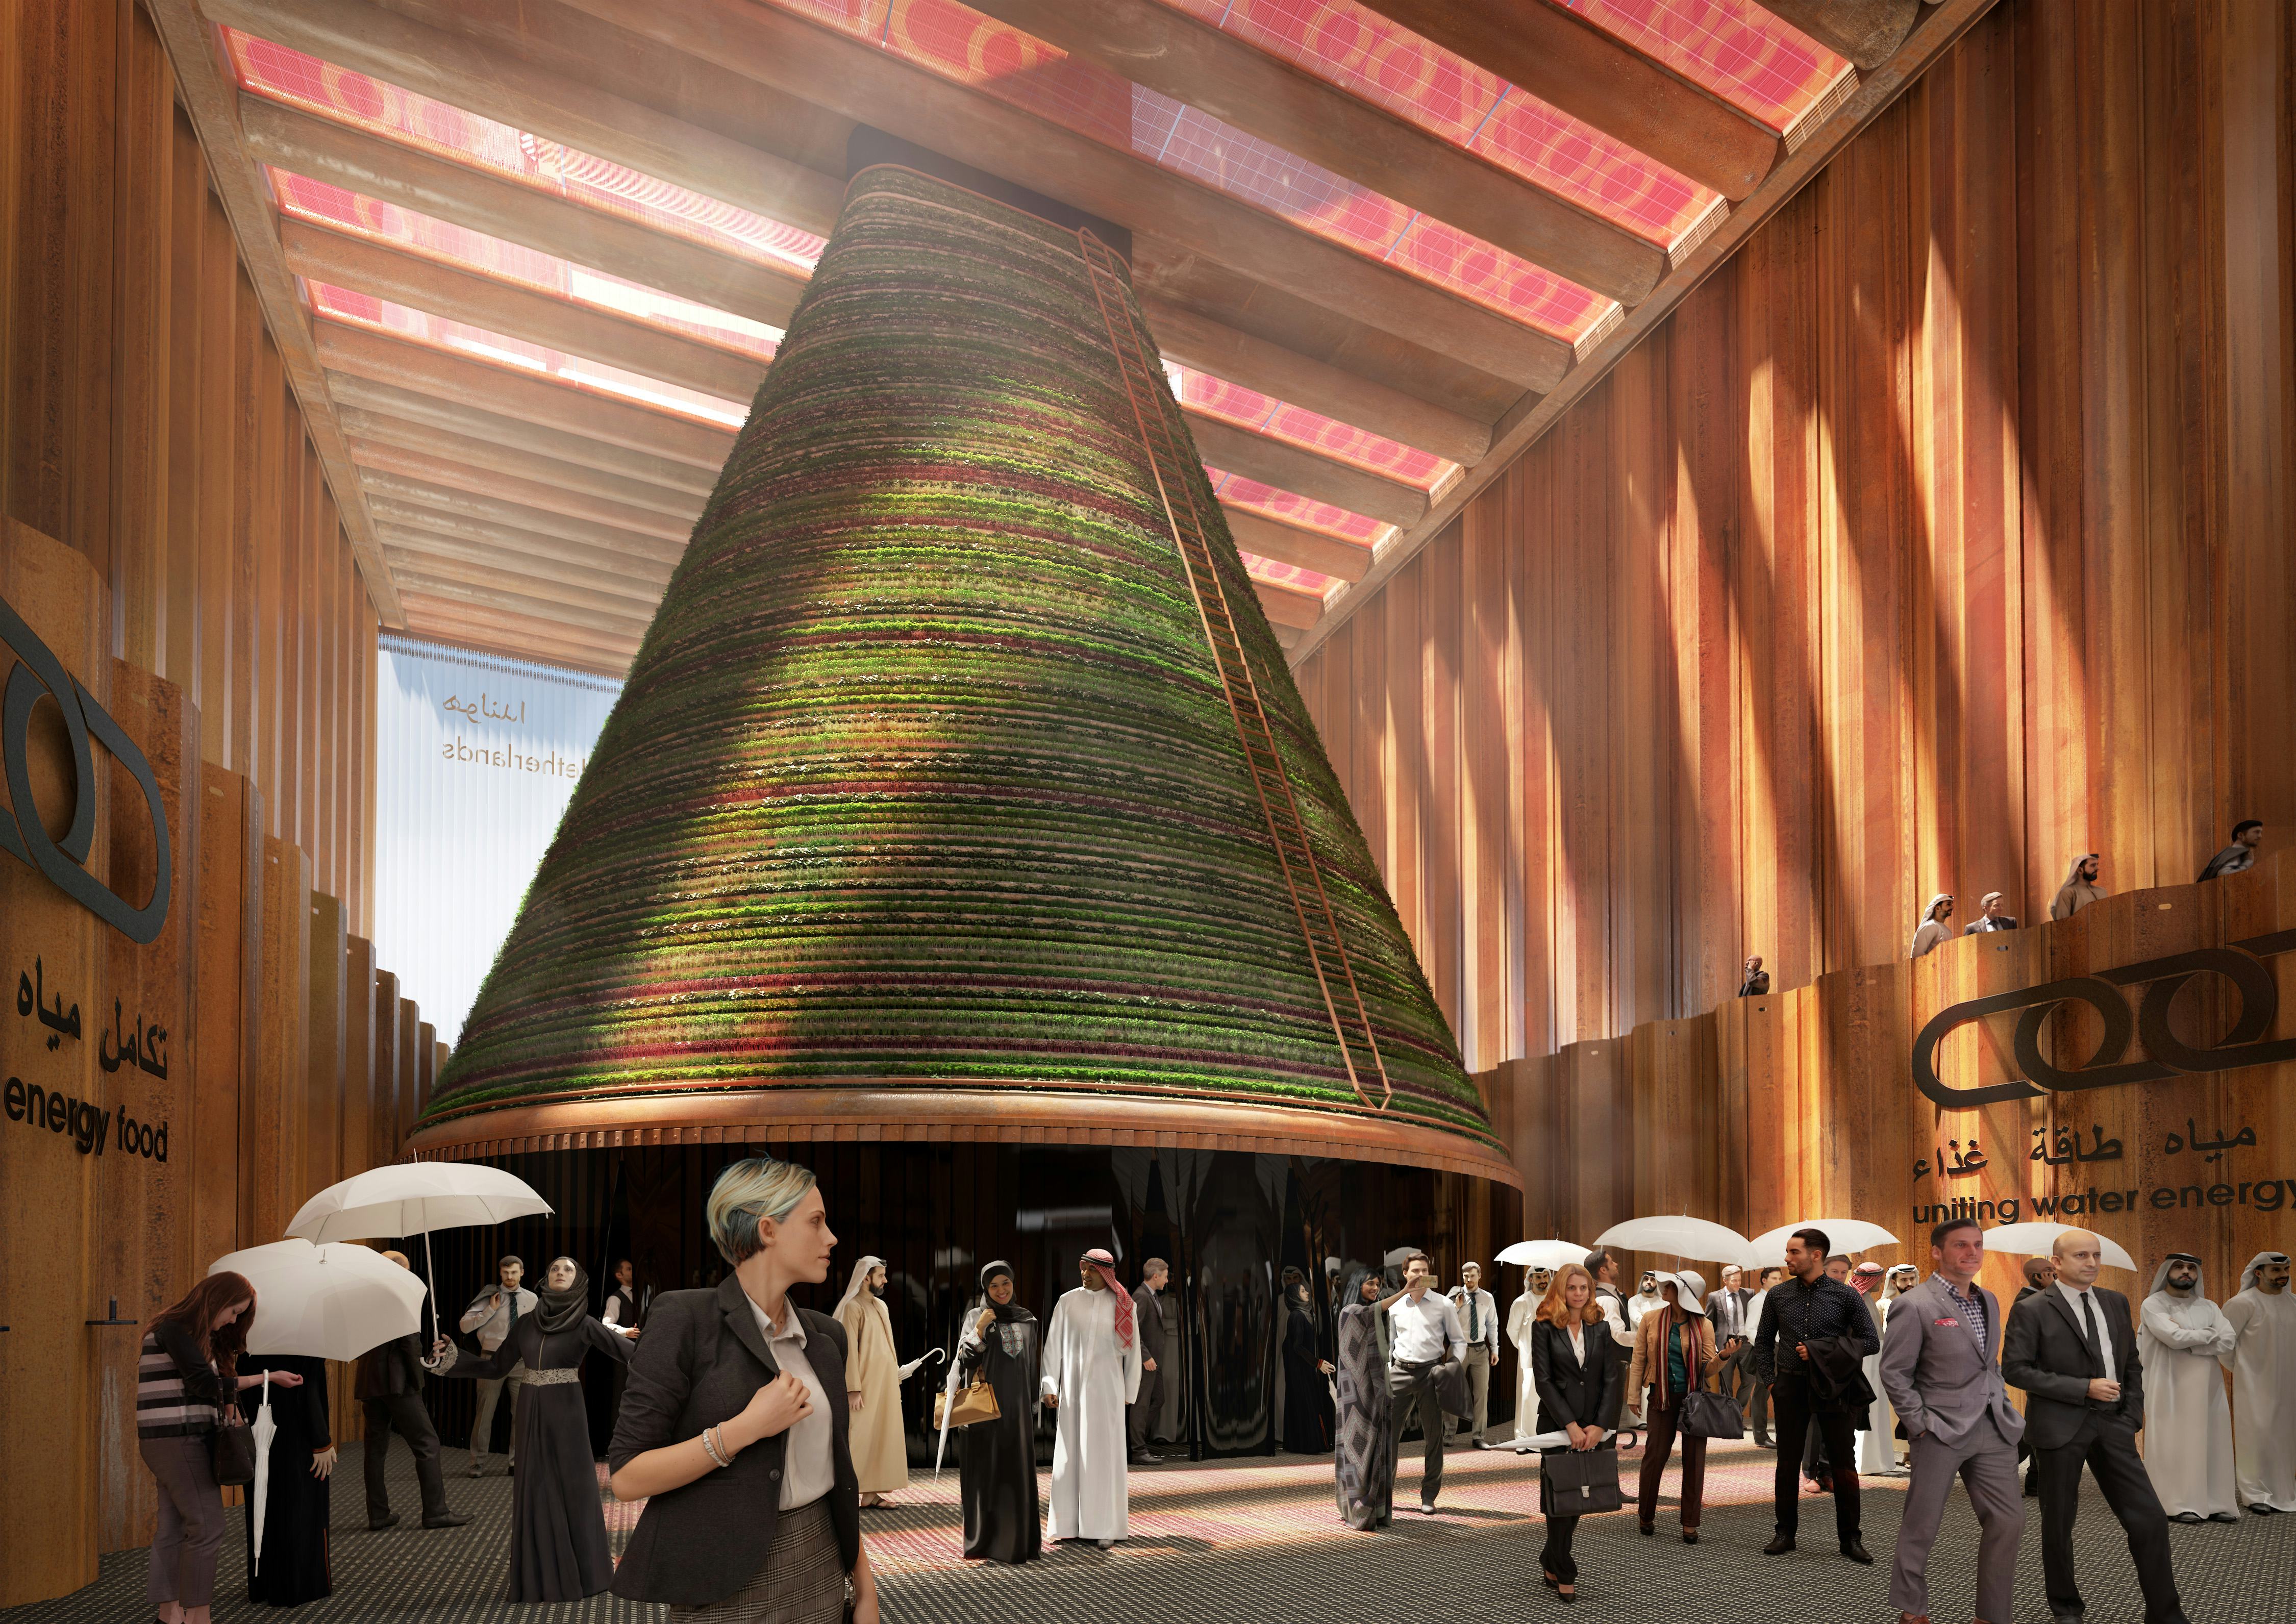 NL Paviljoen - Expo 2020 Dubai